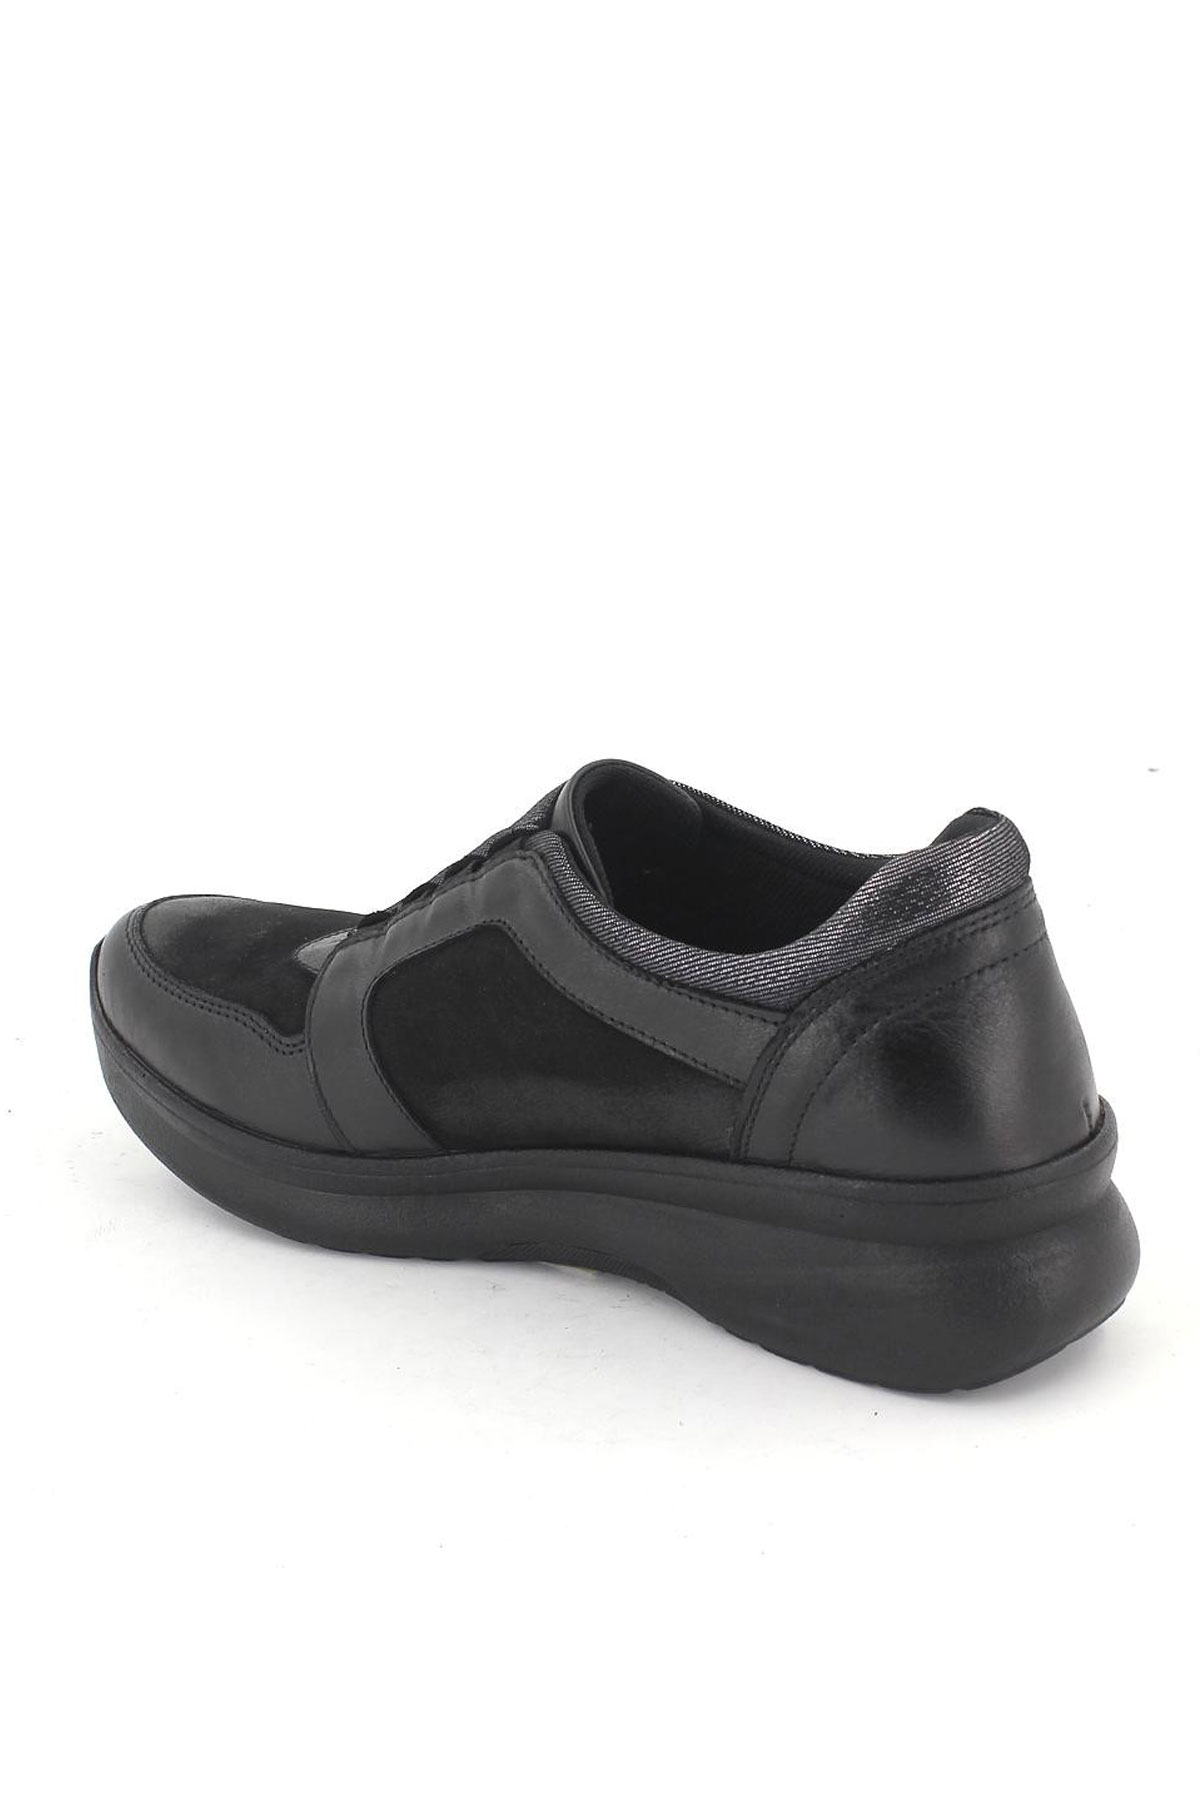 Kadın Airflow Deri Ayakkabı Siyah 1901779K - Thumbnail